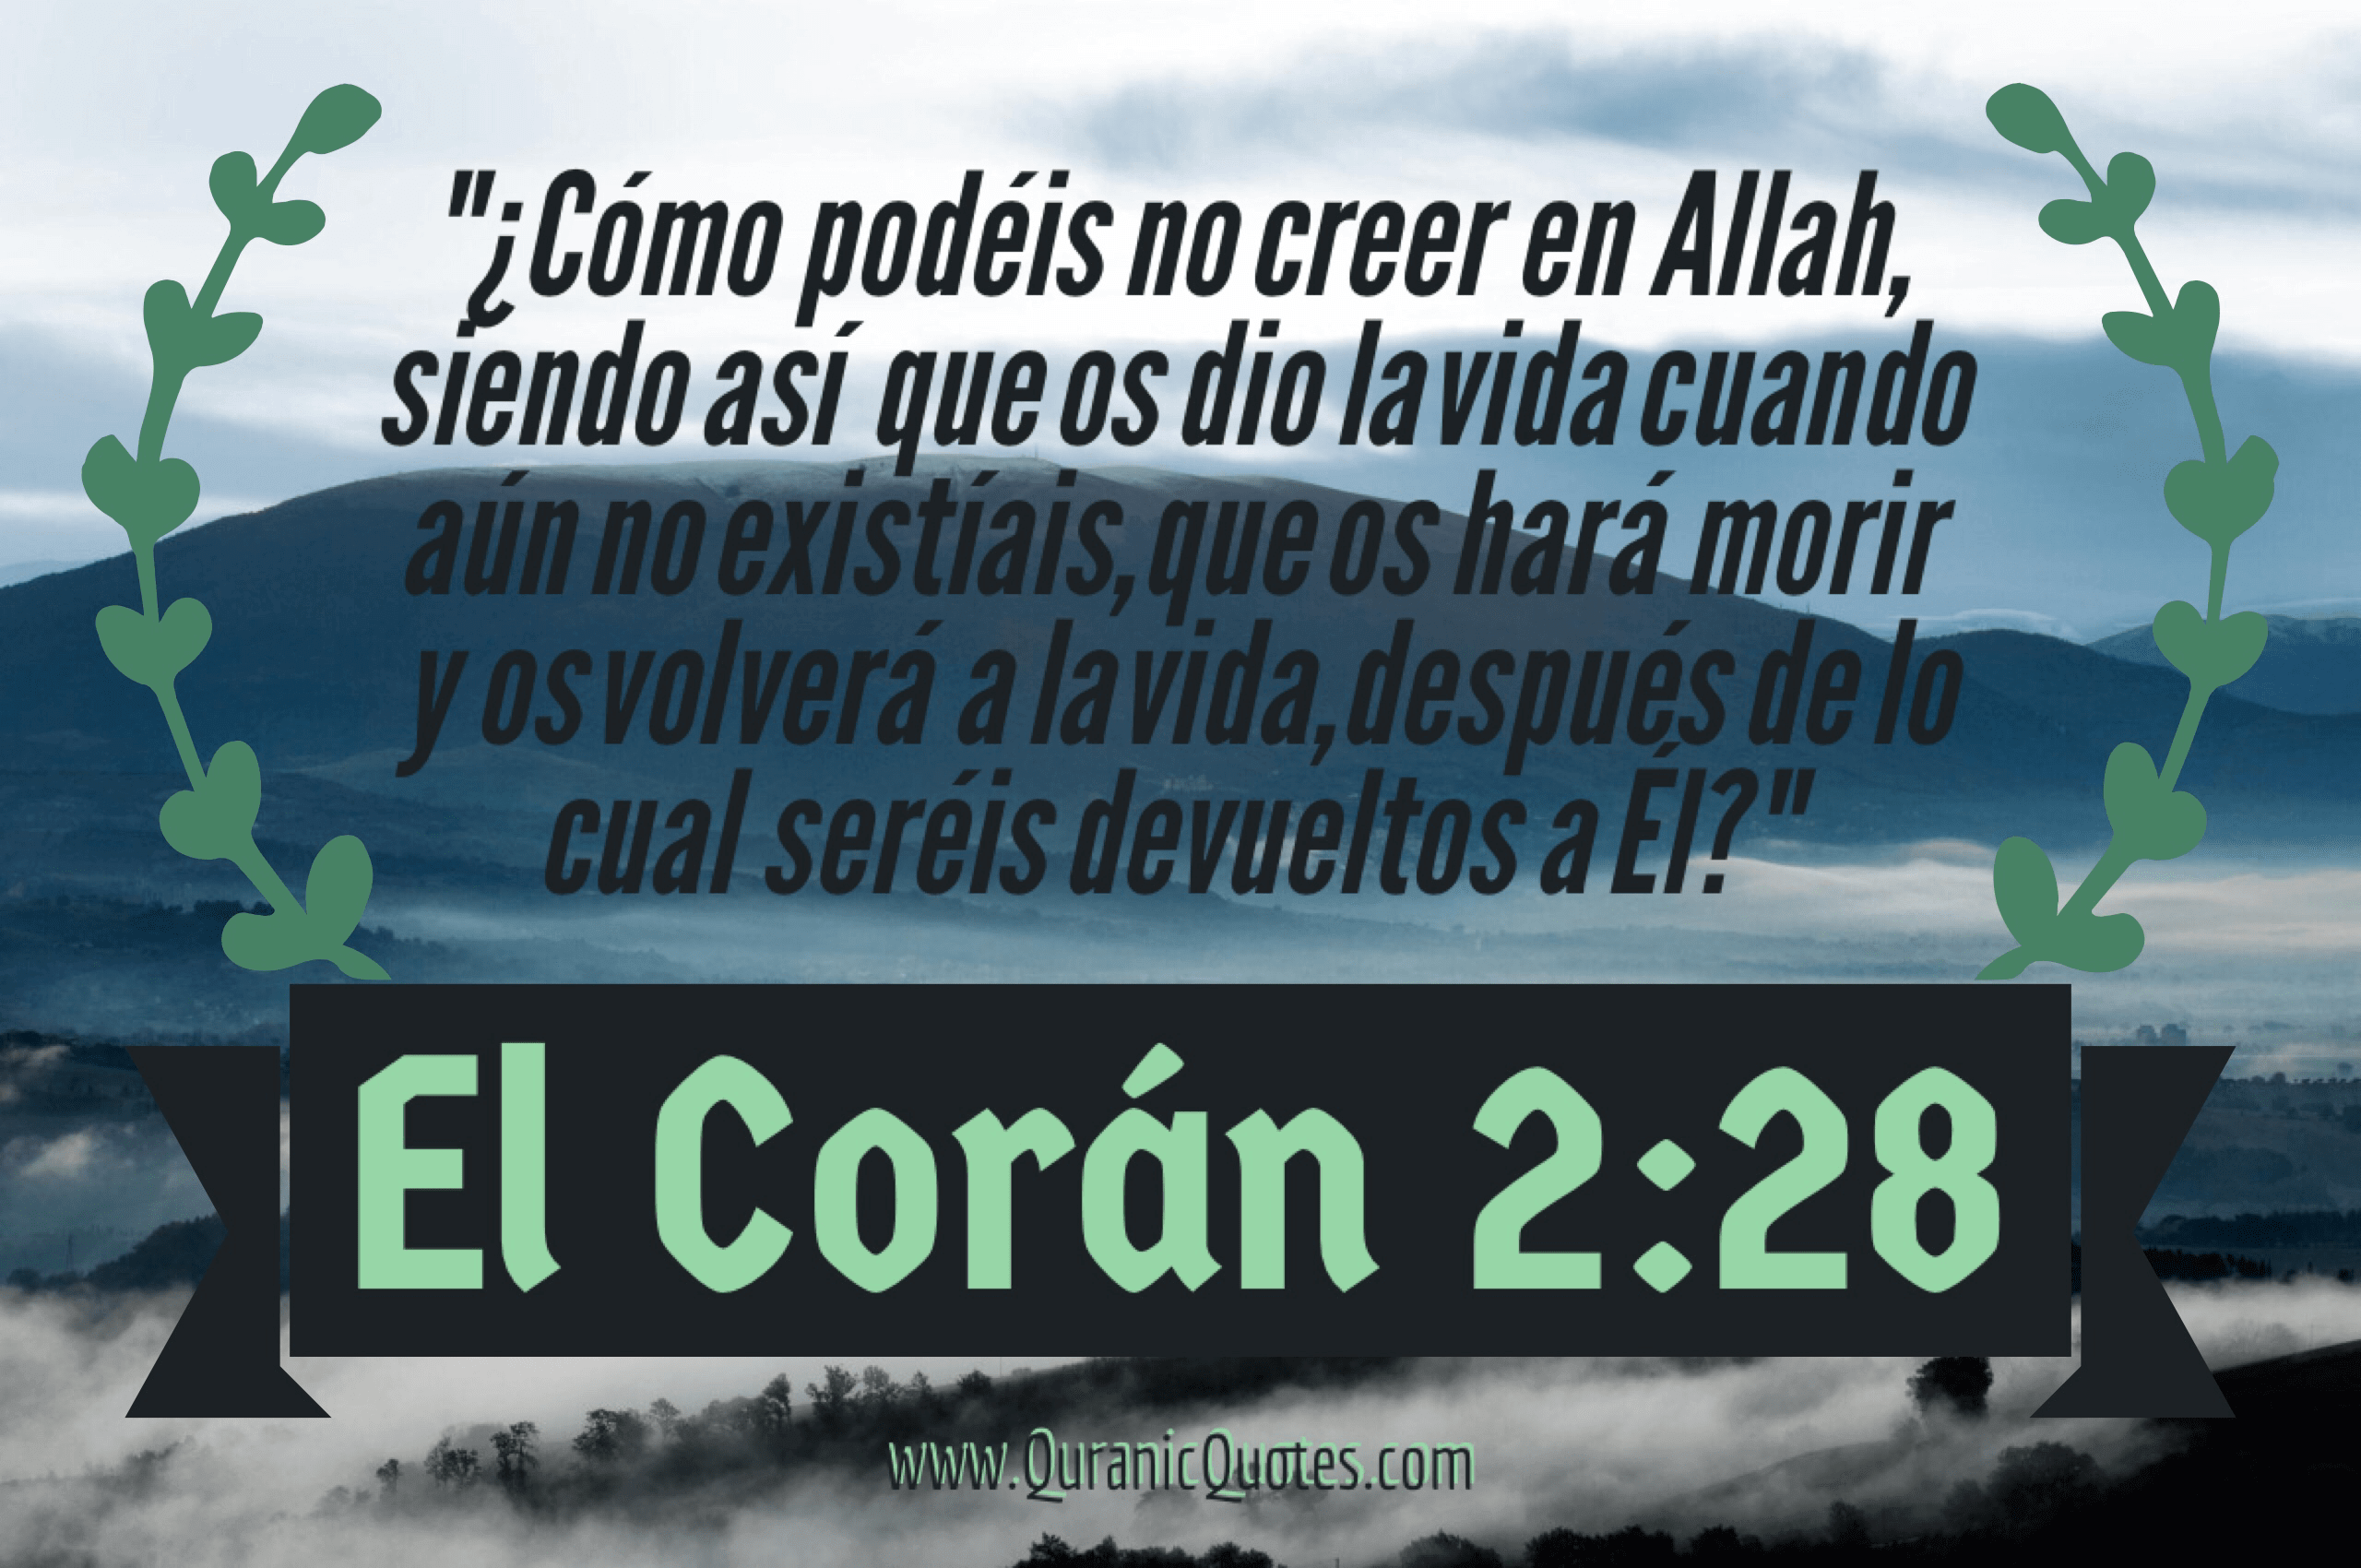 Quranic Quotes Español #76